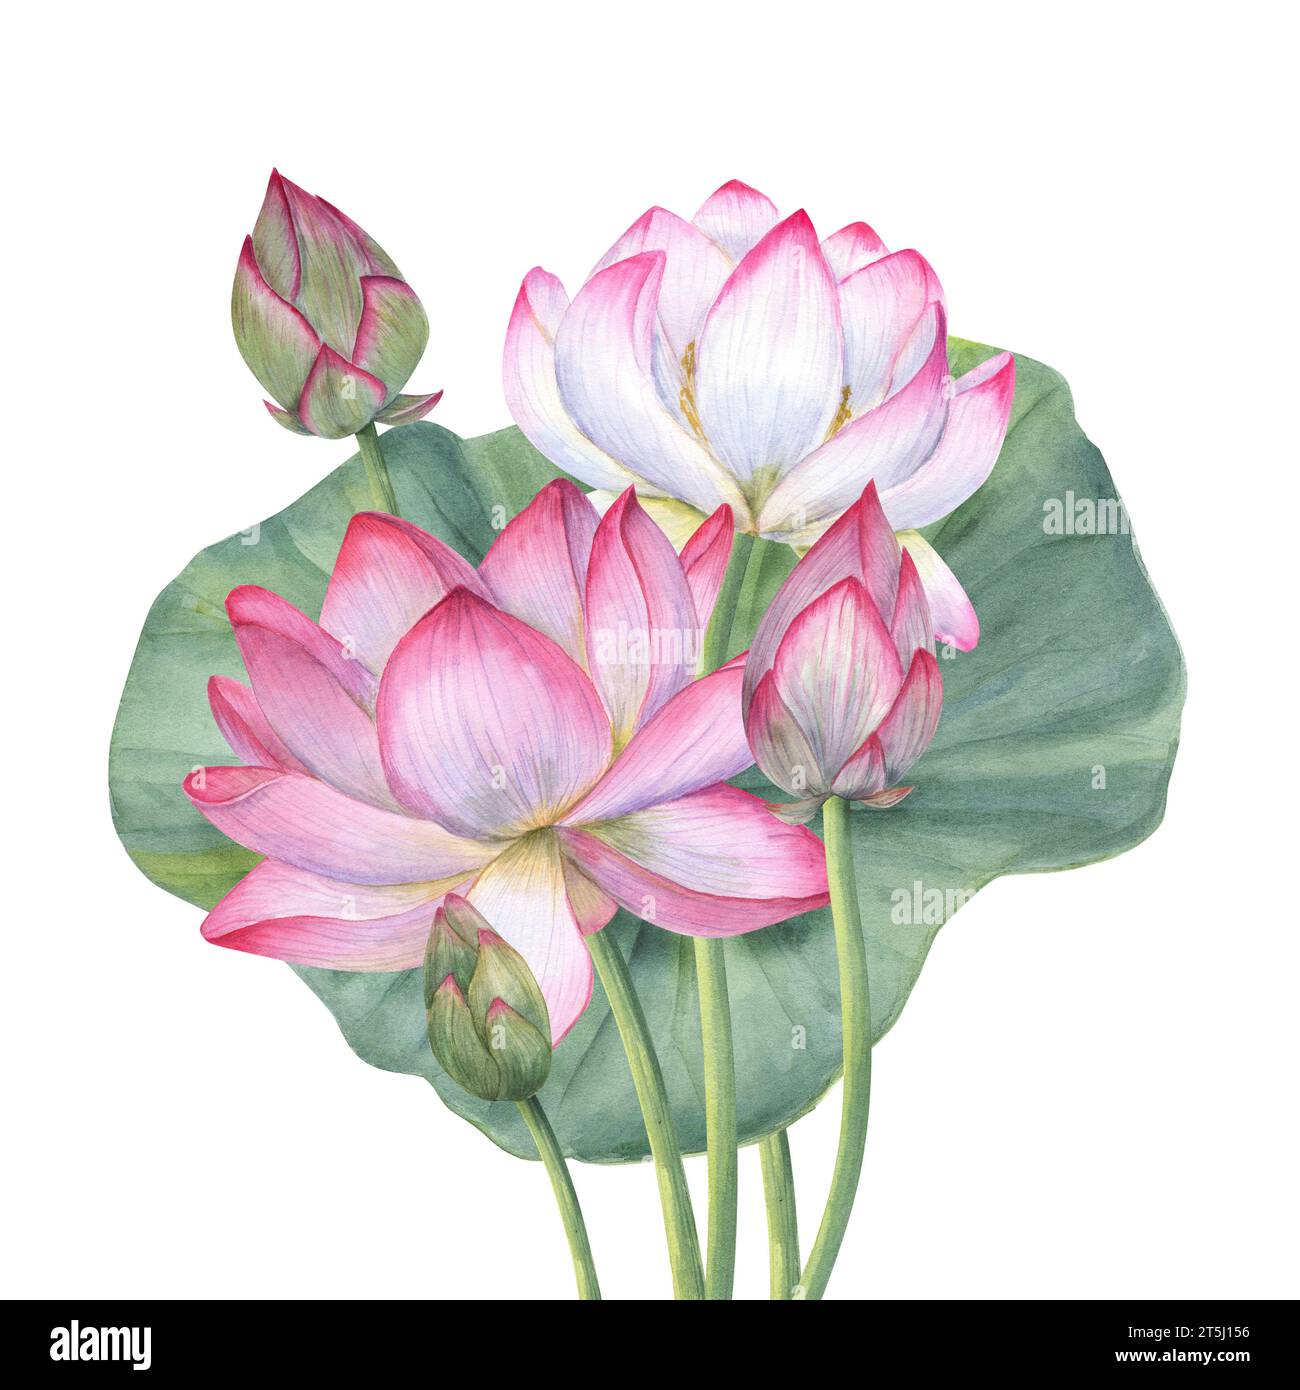 Bouquet de fleurs de lotus rose et feuille. Nénuphars fleuris. lotus indien, feuille verte, bourgeon, lotus sacré. Illustration à l'aquarelle. Banque D'Images